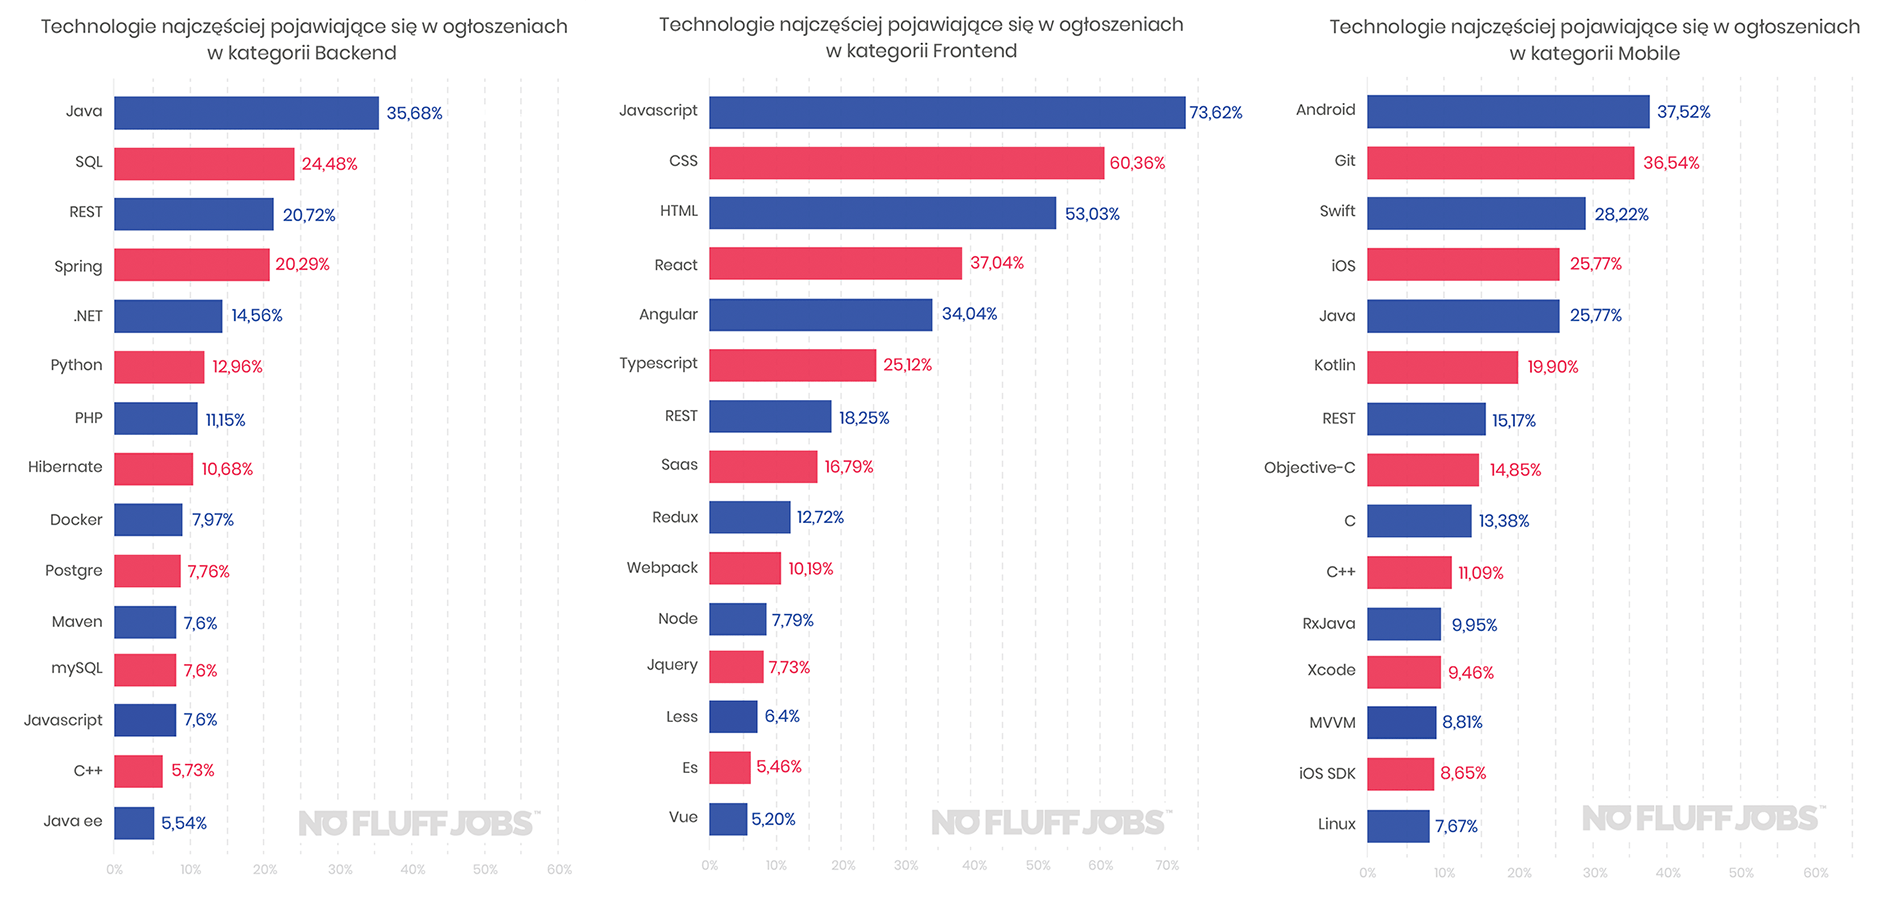 Najpopularniejsze technologie pojawiające ie w ogłoszeniach IT o pracę w 2019 roku (frontend, backend, mobile)